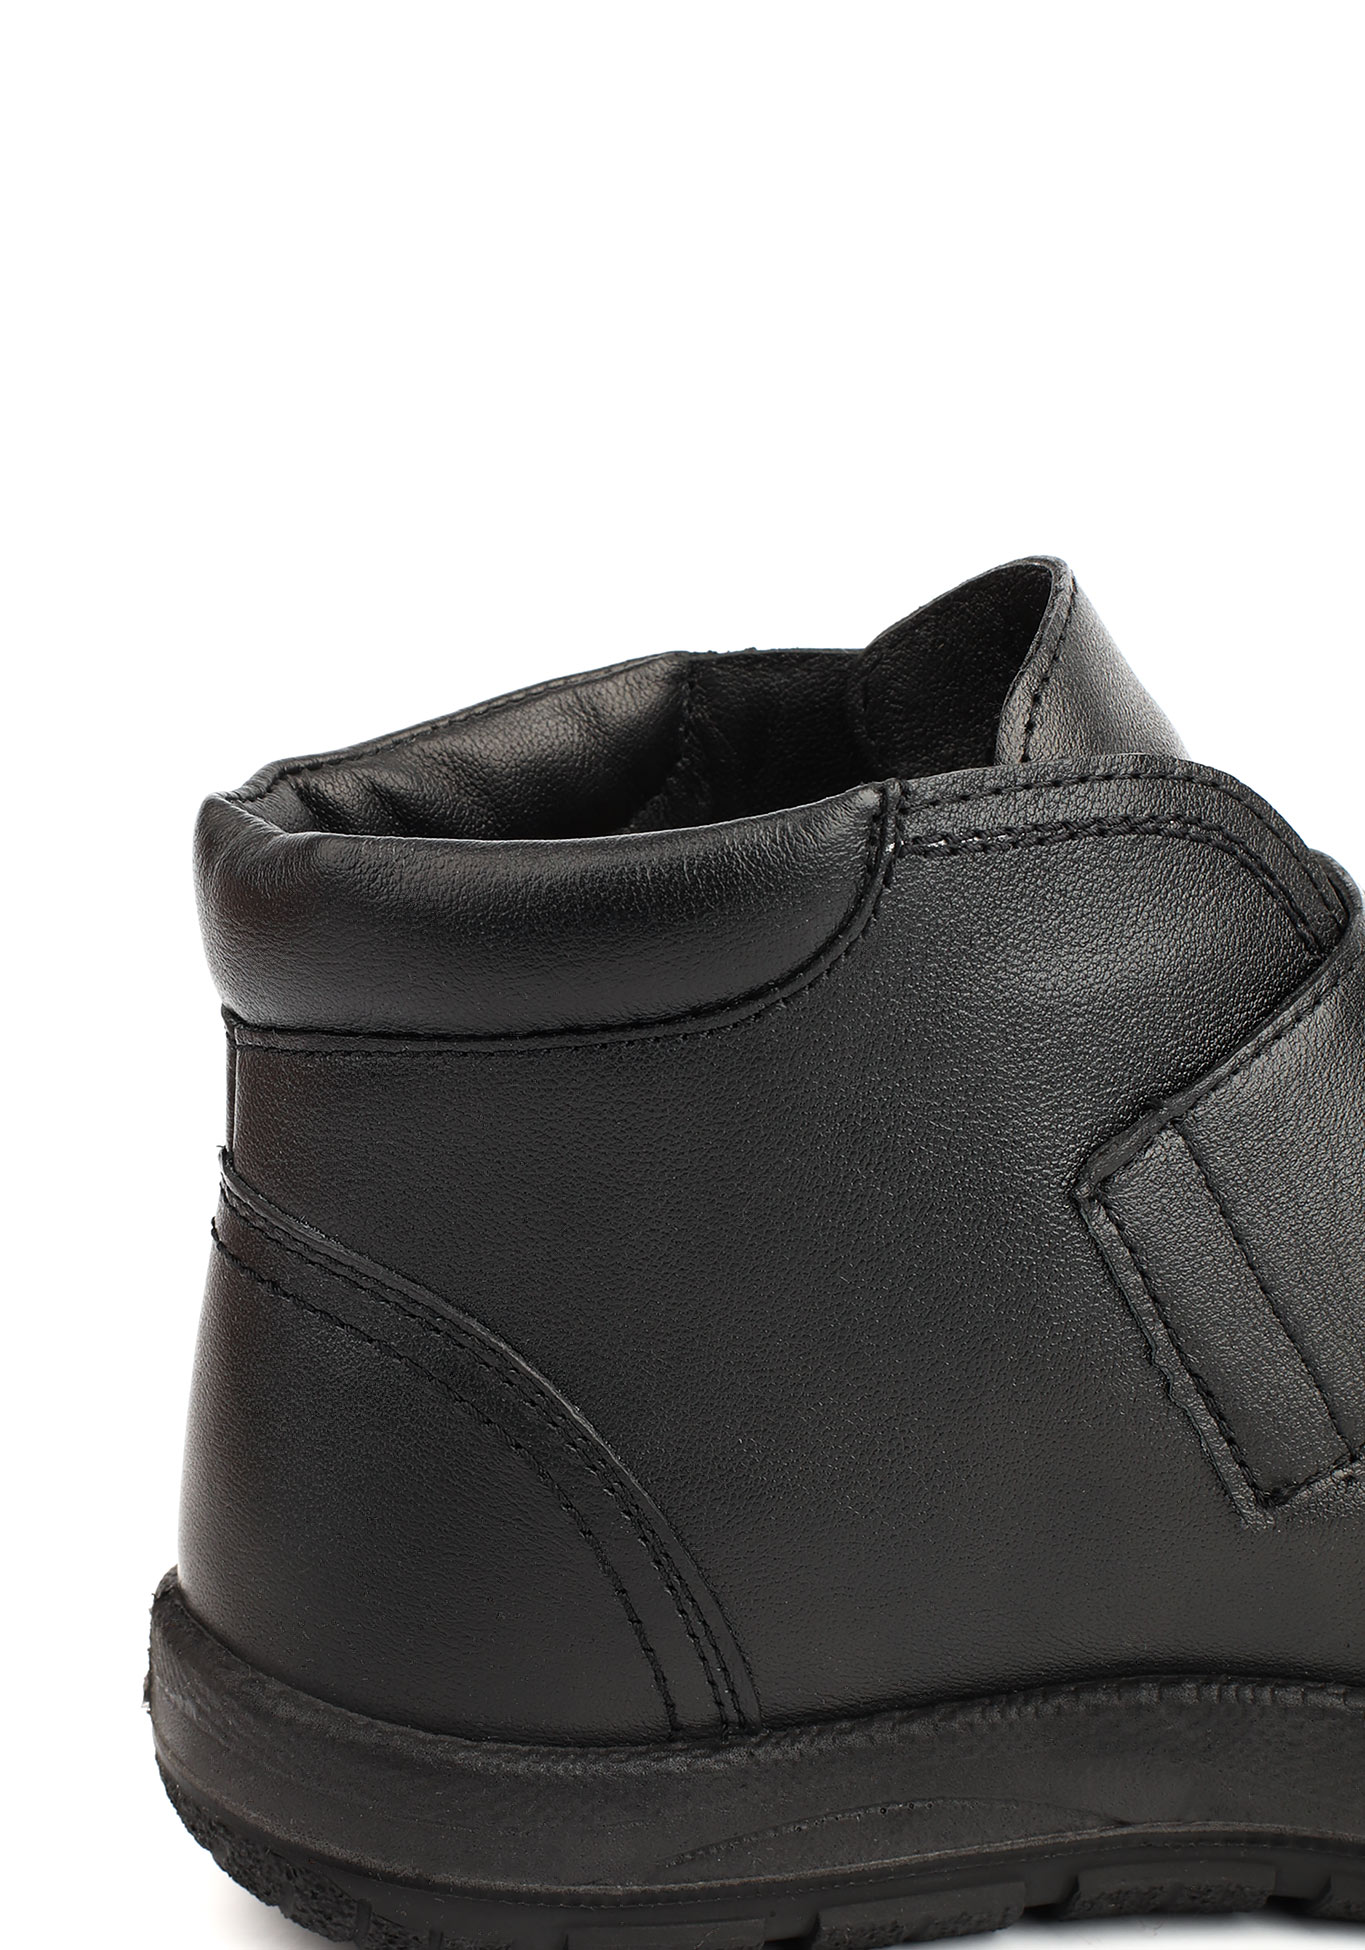 Ботинки женские "Лучия" Germanika, размер 37, цвет черный - фото 6